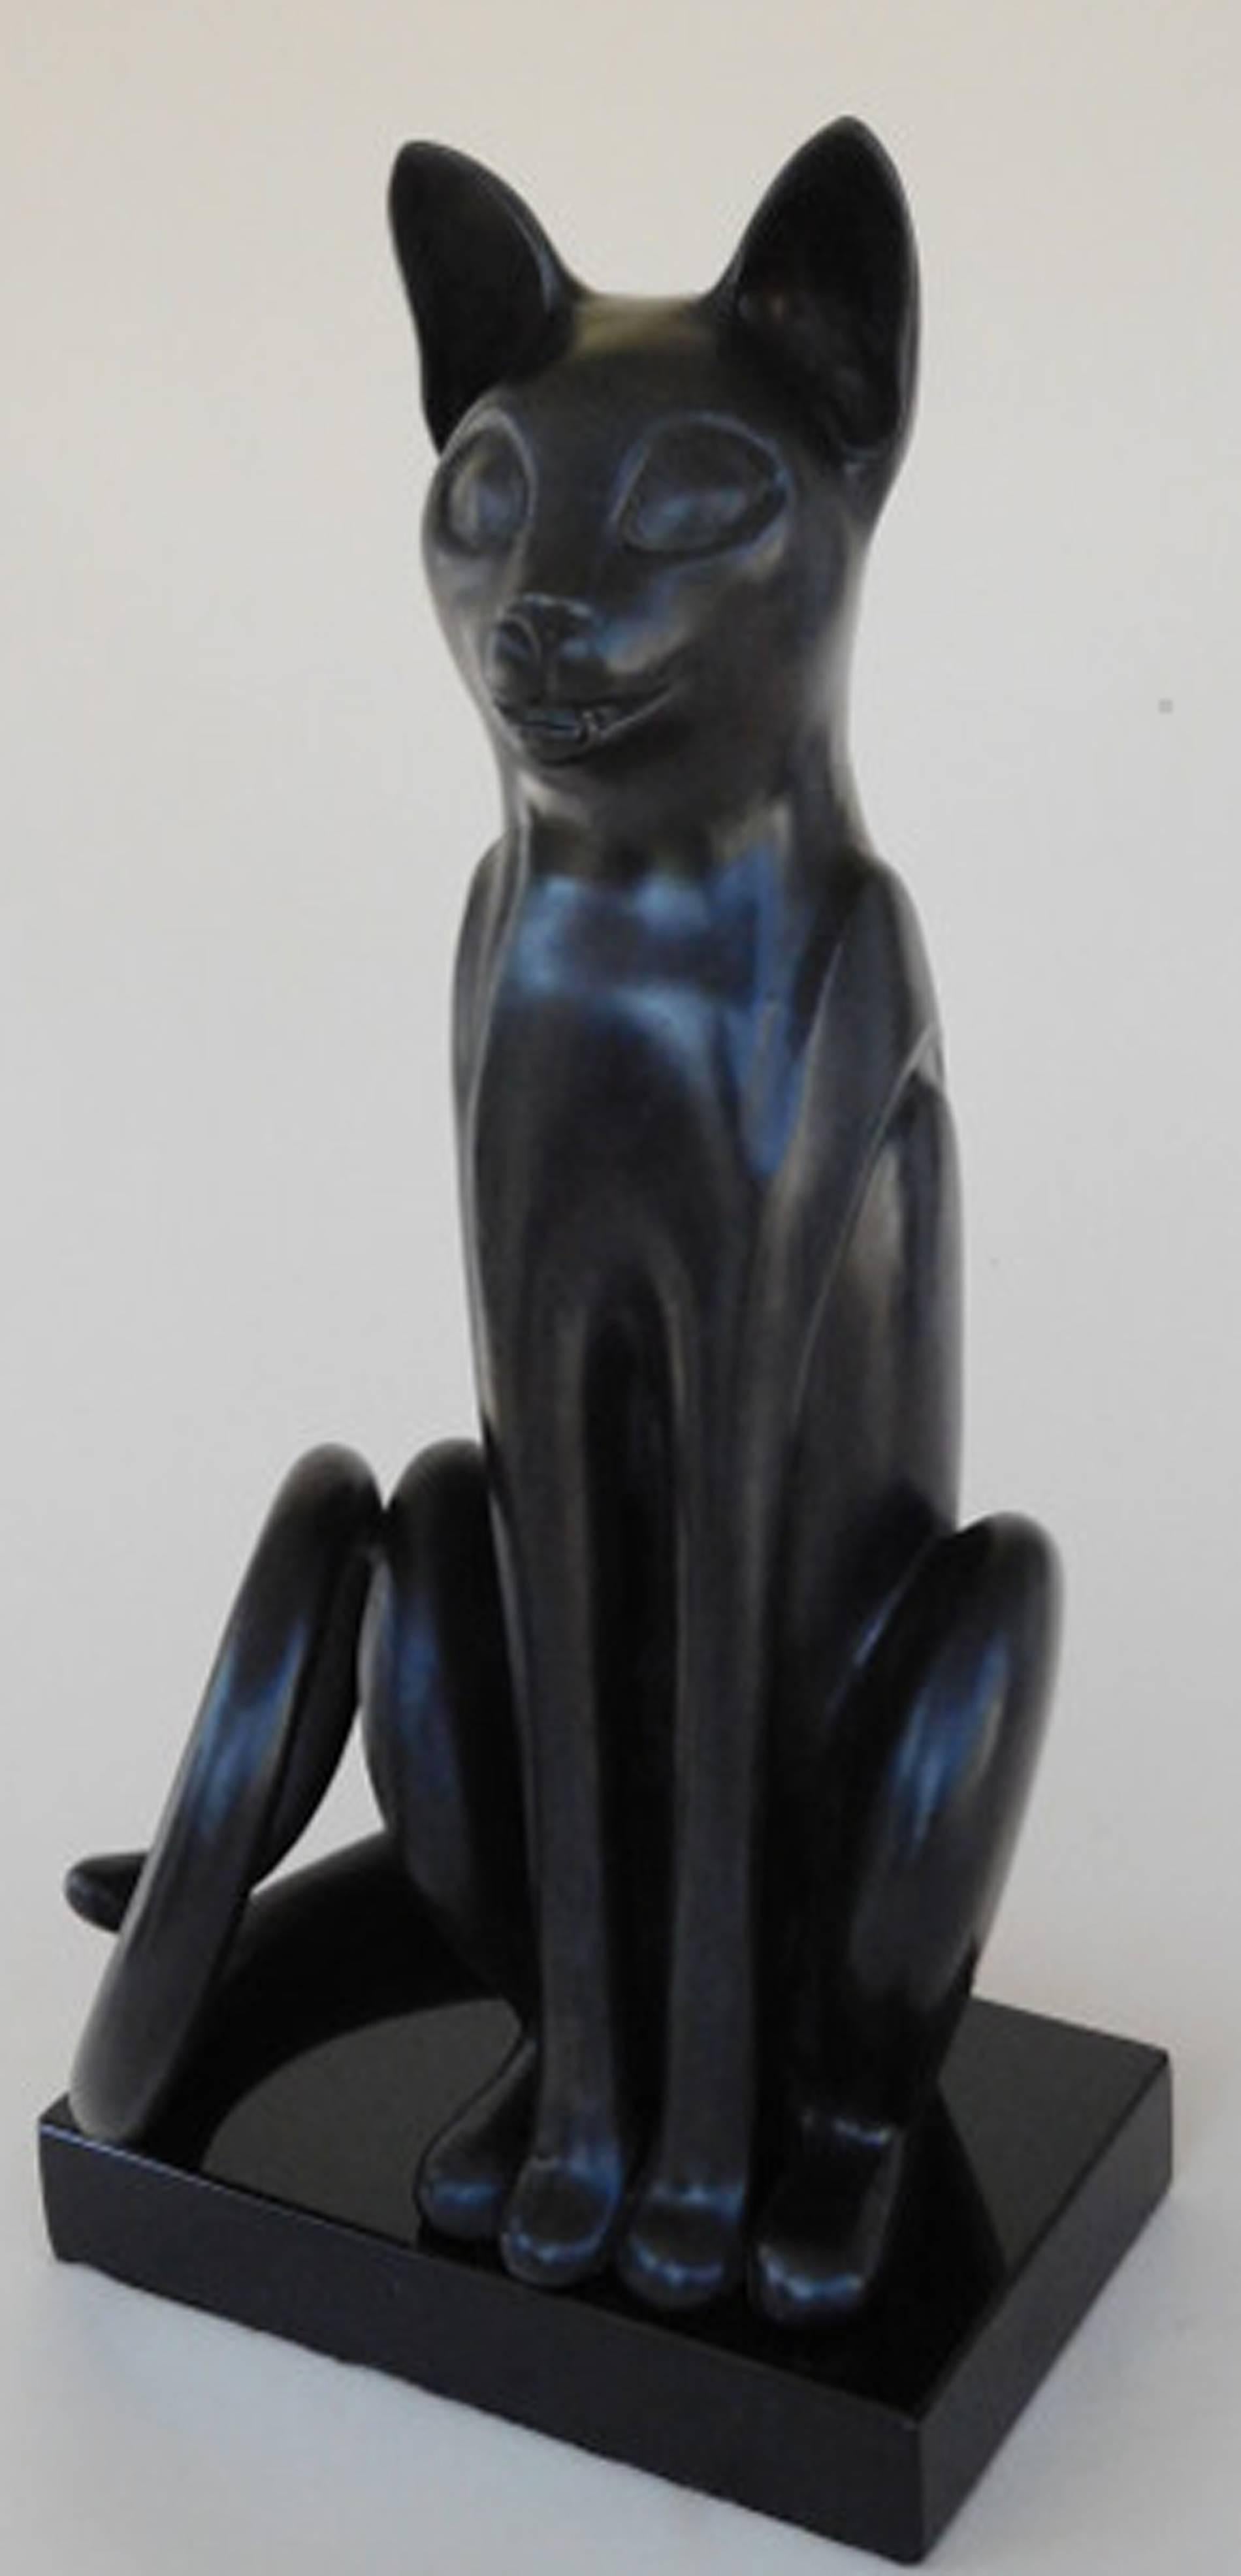 Bast ( Chat assis en bronze avec patine noire) - Réalisme Sculpture par Paula Blackman